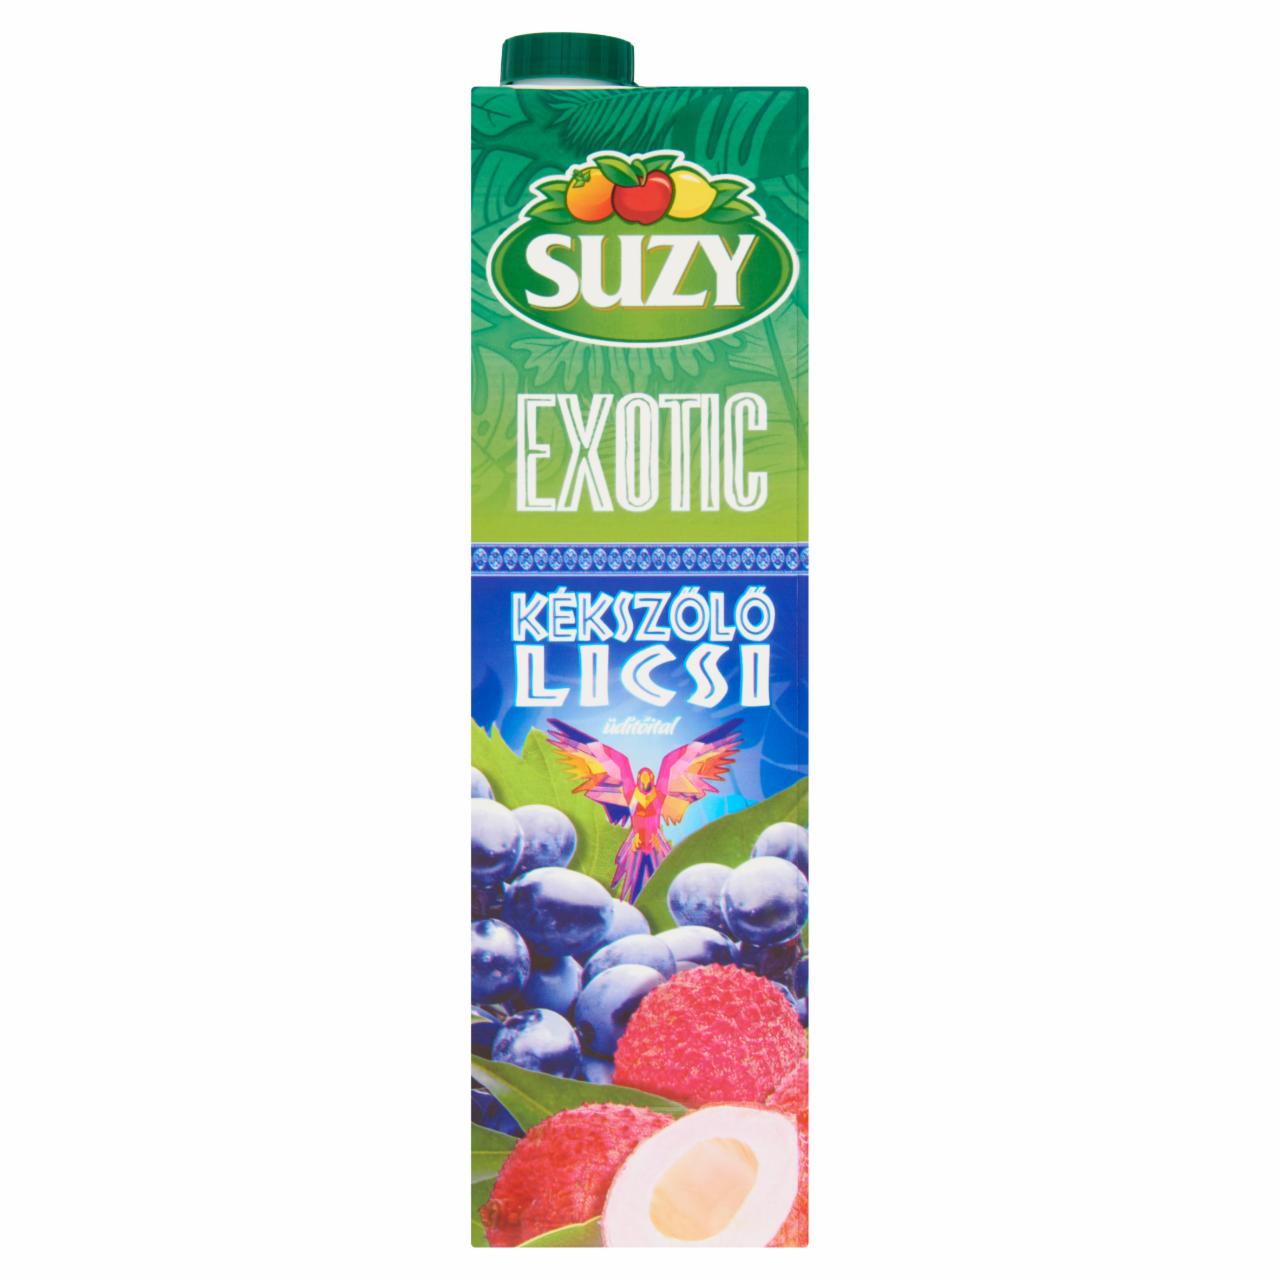 Képek - Suzy Exotic kékszőlő-licsi üdítőital cukorral és édesítőszerekkel 1 l